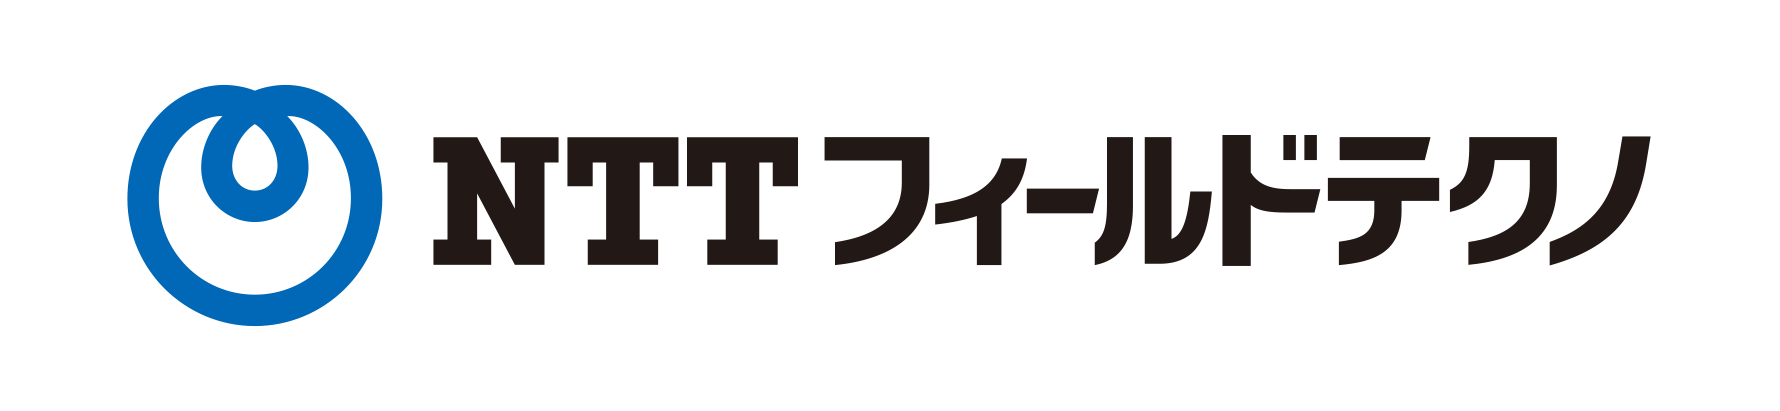 nttFT_logo.png